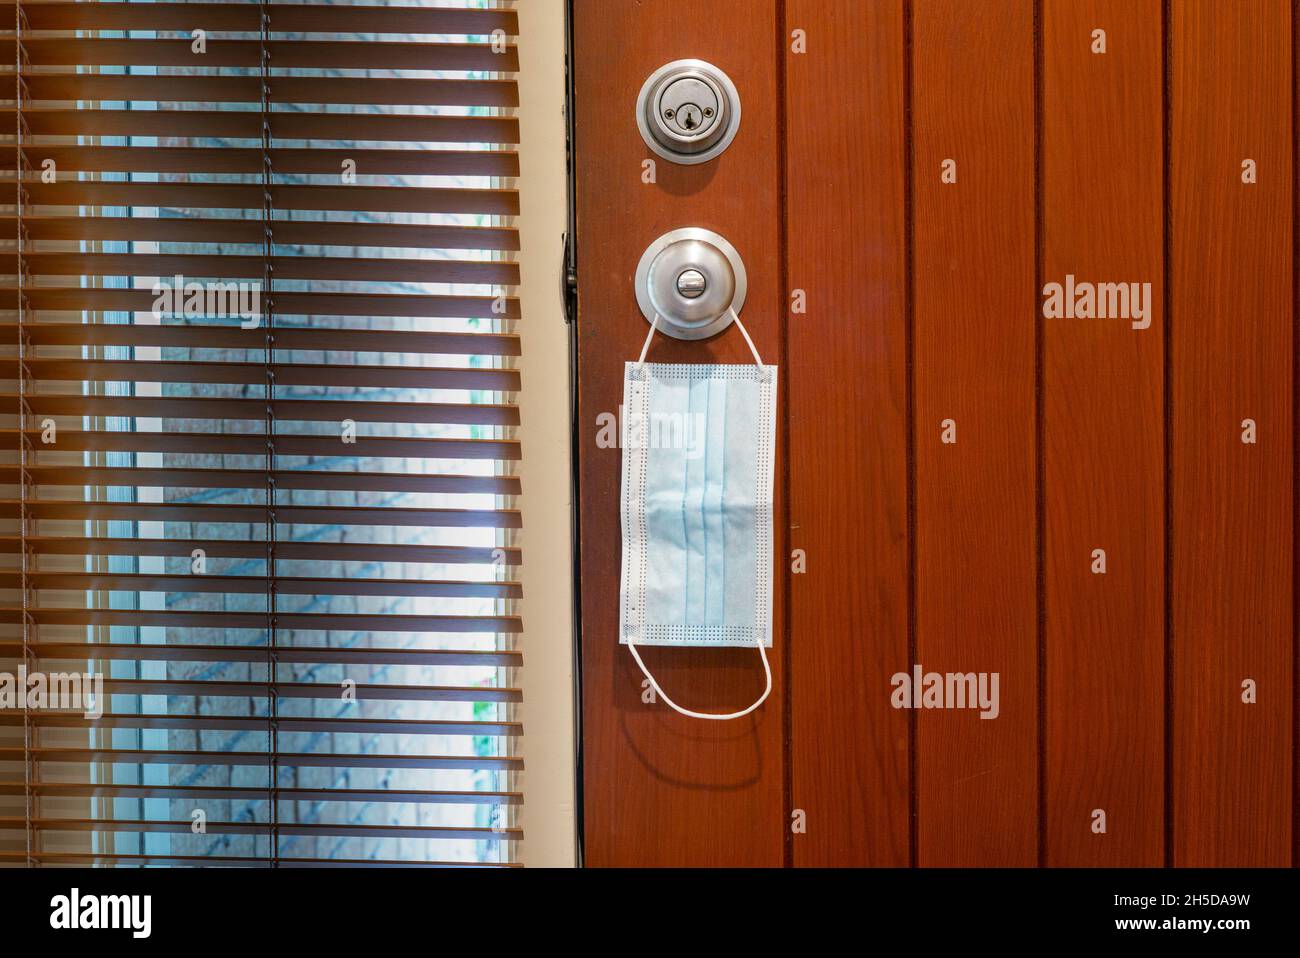 Una maschera medica è appesa al pomello della porta come un prompt di portare un segno quando si lascia la casa durante la pandemia di Covid-19. Foto Stock